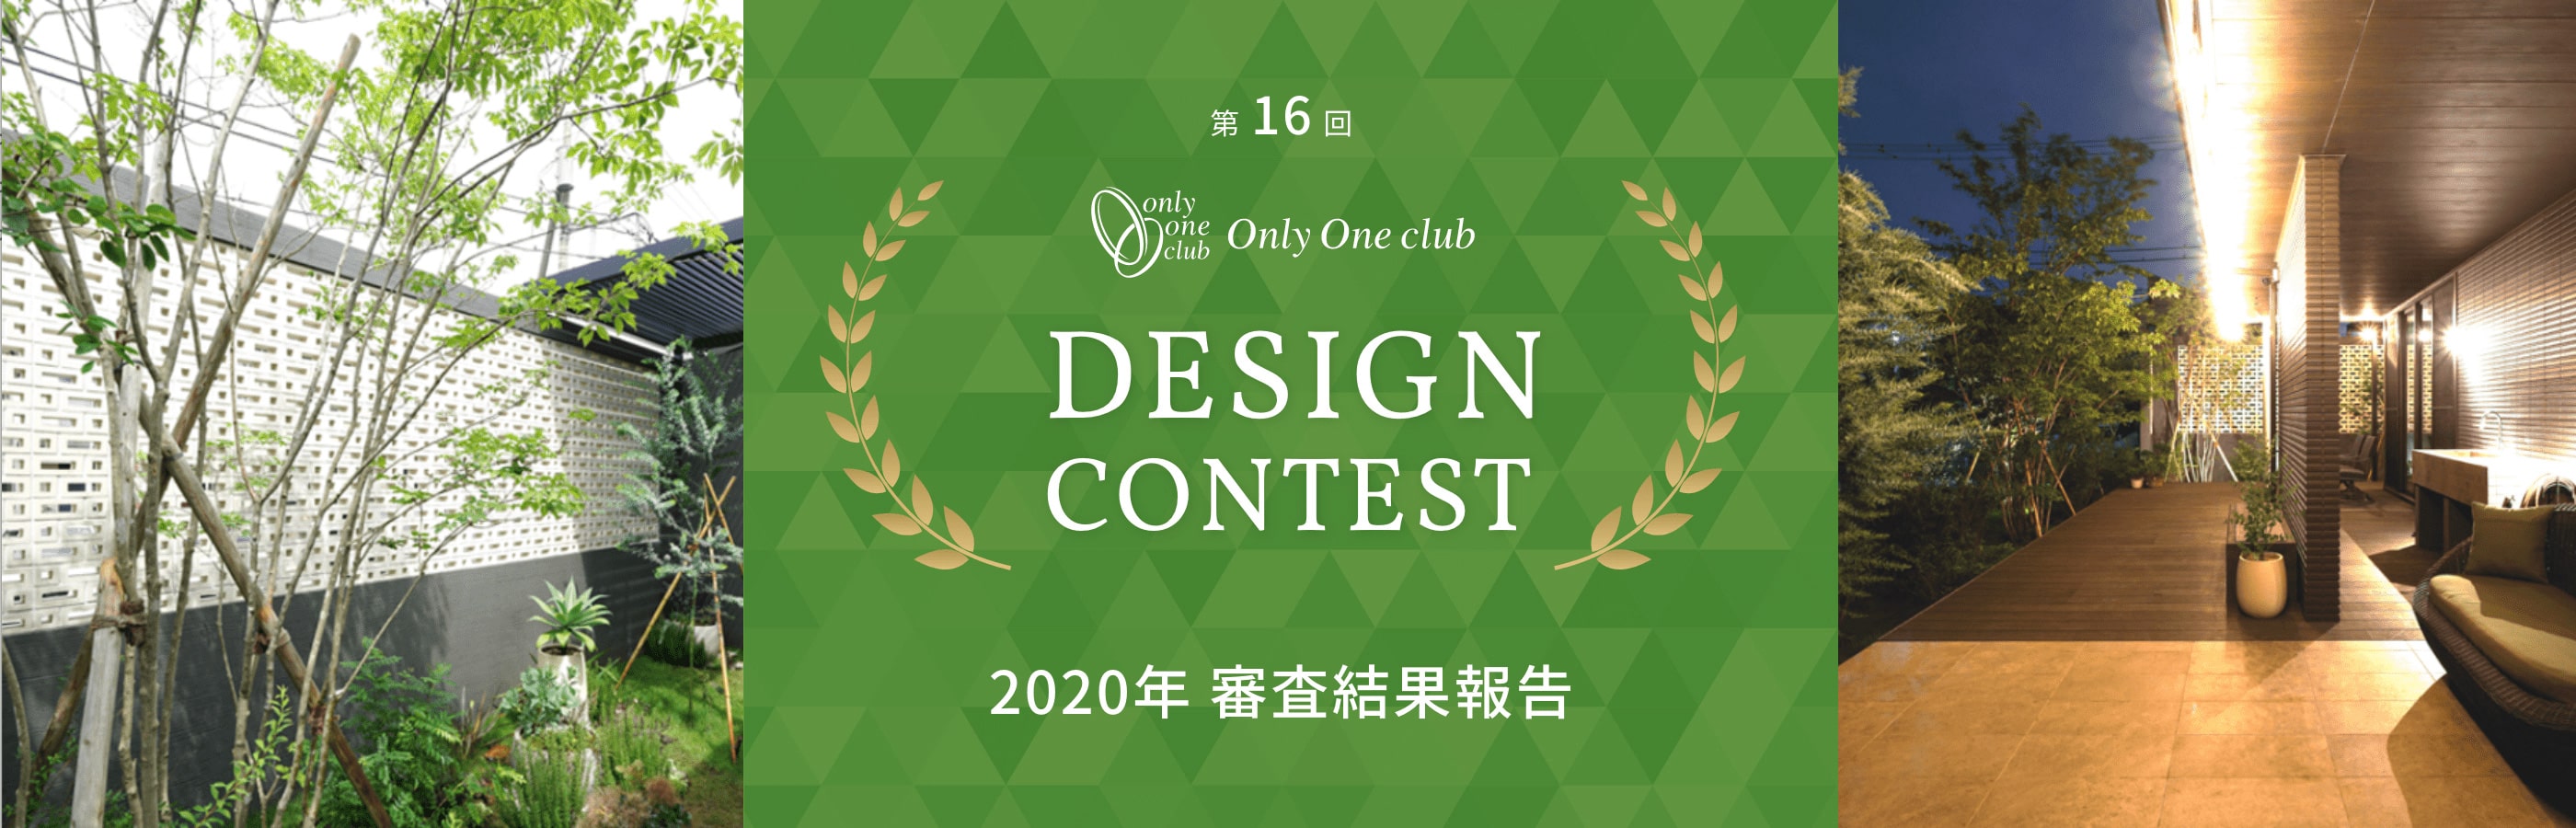 オンリーワンクラブ2020デザインコンテスト審査結果報告